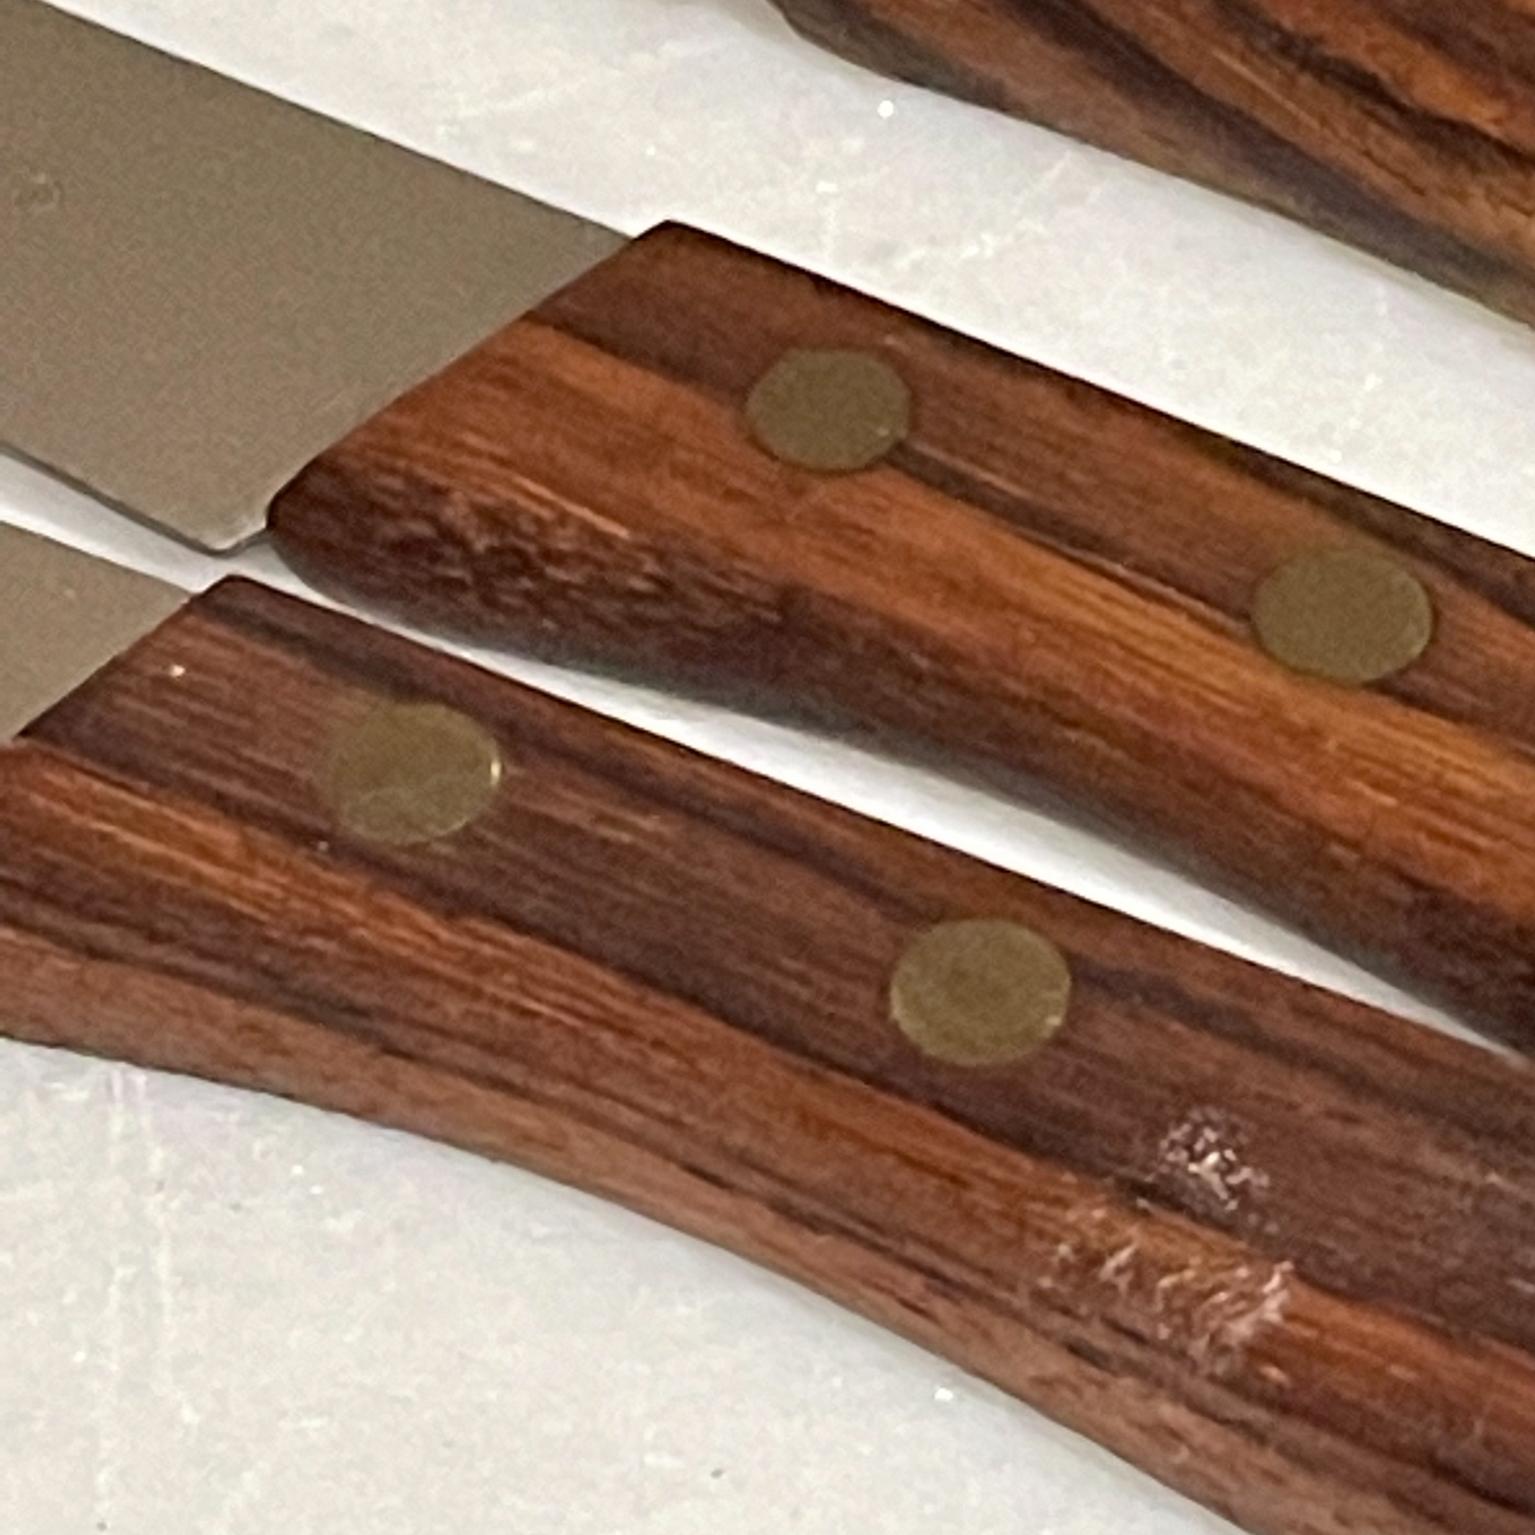 Japan Moravan Knives Steak Cutlery Set of 5 Midcentury Modern 1960s 2